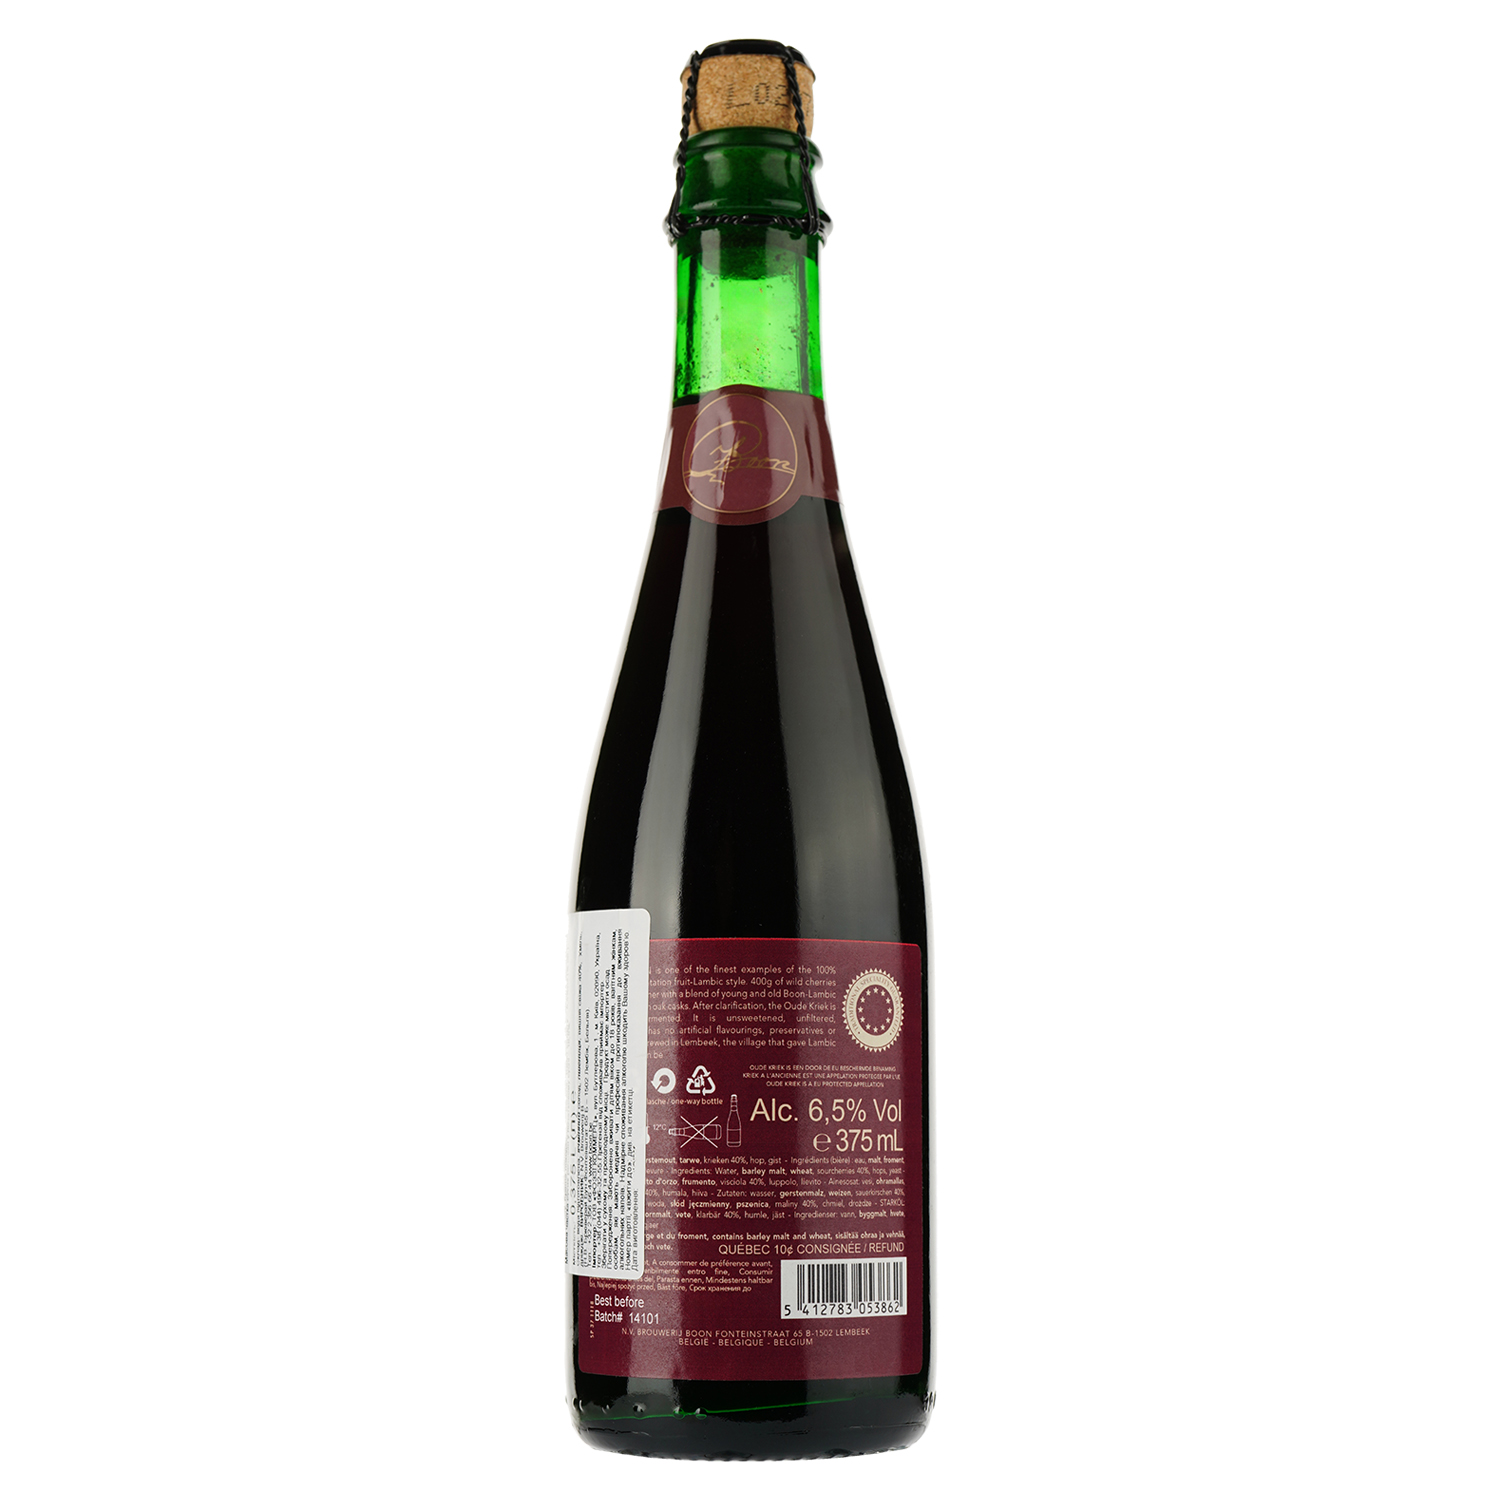 Пиво Brouwerij Boon Oude Kriek солодовое, светлое, нефильтрованное, 6,5%, 0,375 л (591370) - фото 2